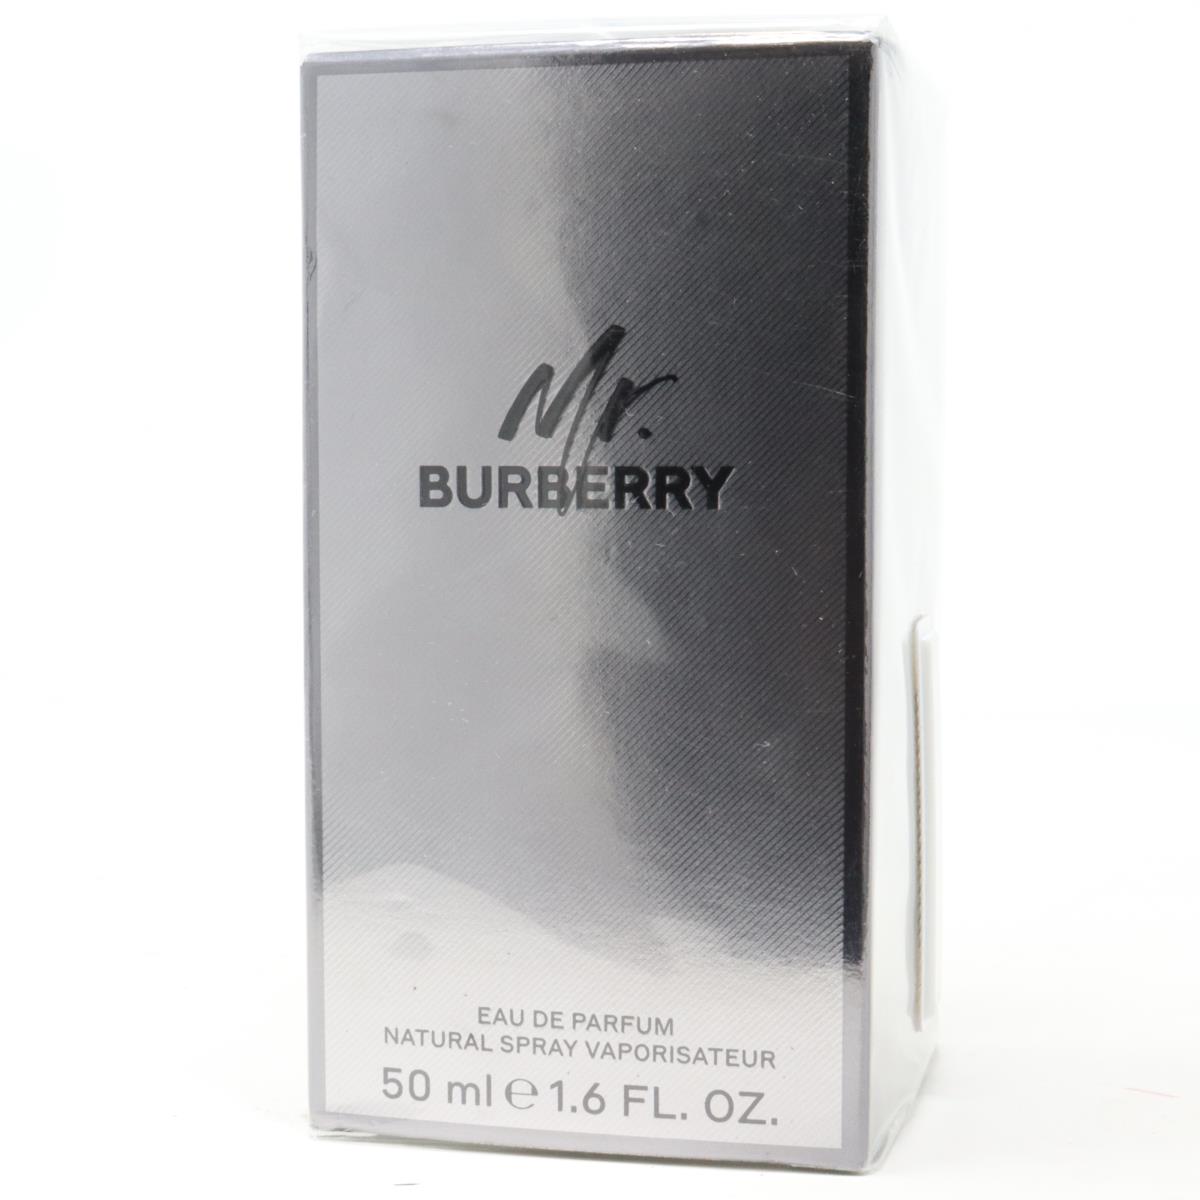 Mr Burberry by Burberry Eau De Parfum 1.6oz/50ml Spray